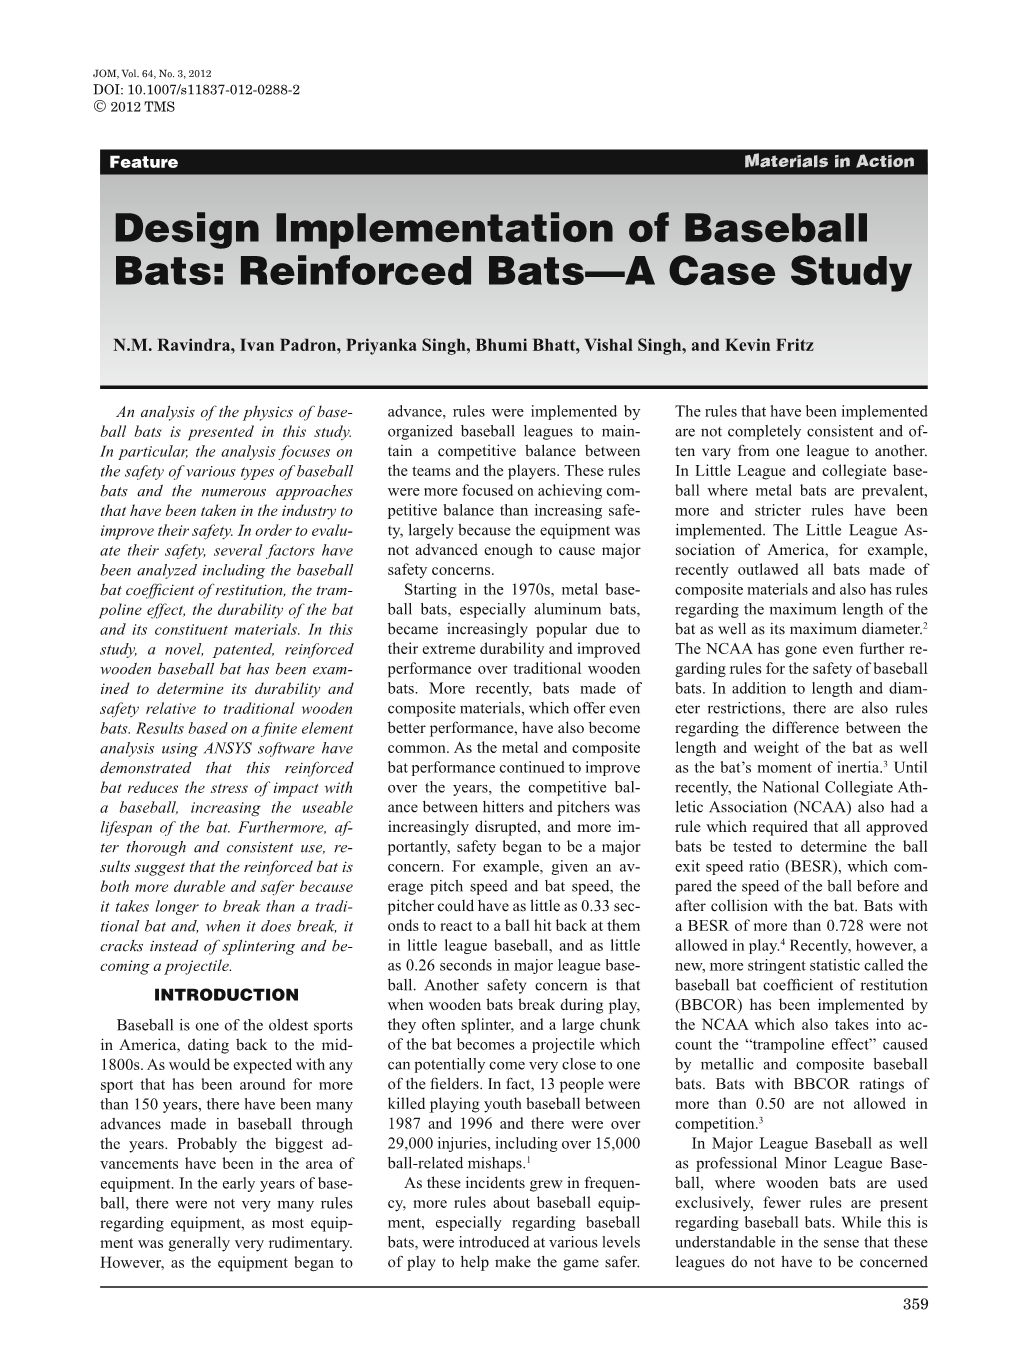 Design Implementation of Baseball Bats: Reinforced Bats—A Case Study